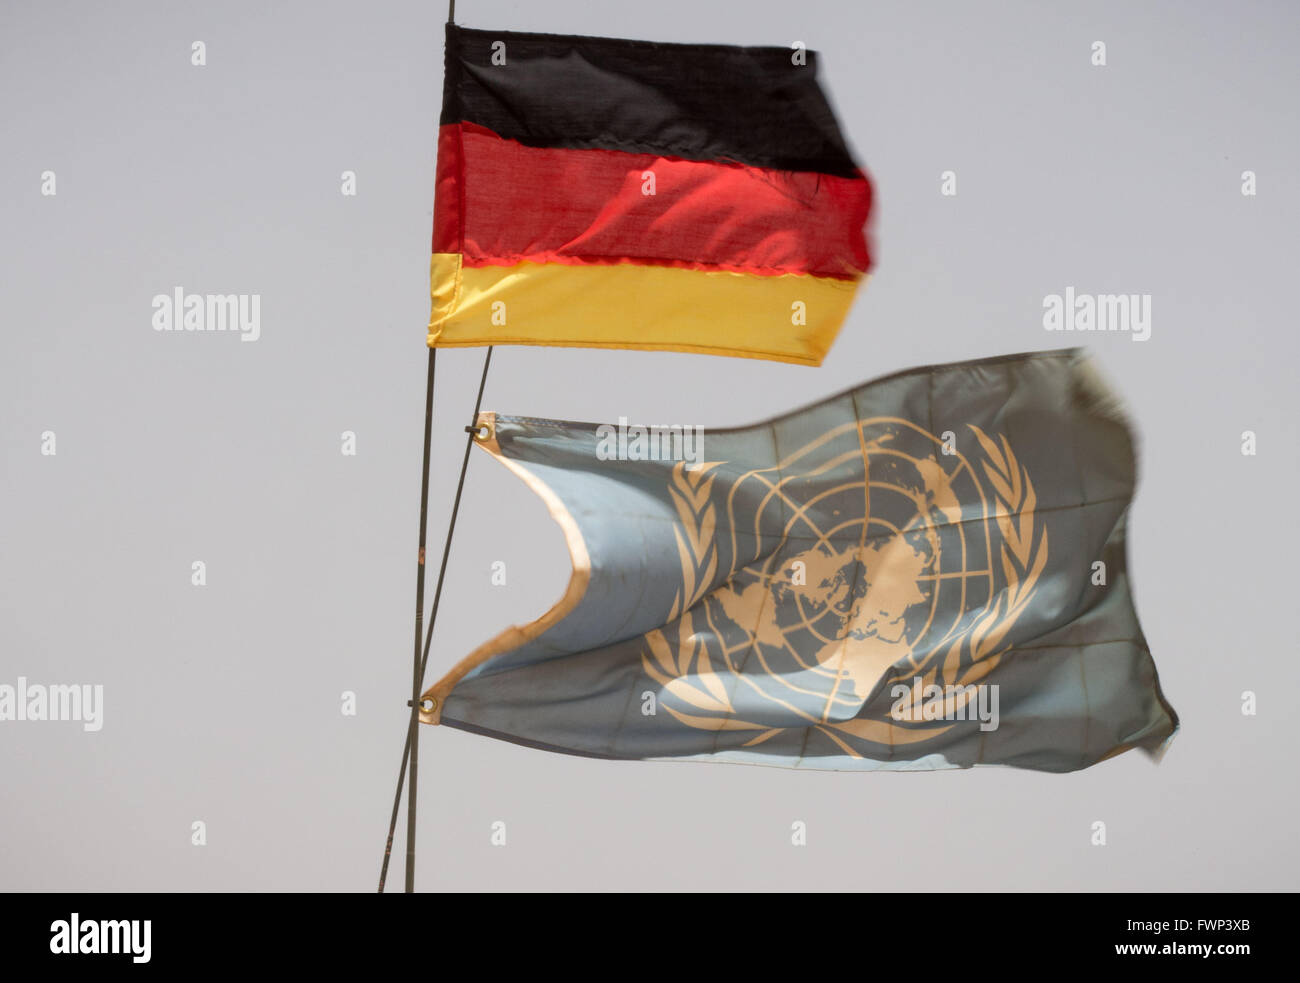 Eine deutsche Nationalflagge und eine Flagge der Vereinten Nationen (UN) sind auf ein Fahrzeug der deutschen bewaffneten Kräfte (Bundeswehr) montiert, die Teil der UN-Mission MINUSMA in Gao, Mali, 5. April 2016 ist. Foto: MICHAEL KAPPELER/dpa Stockfoto